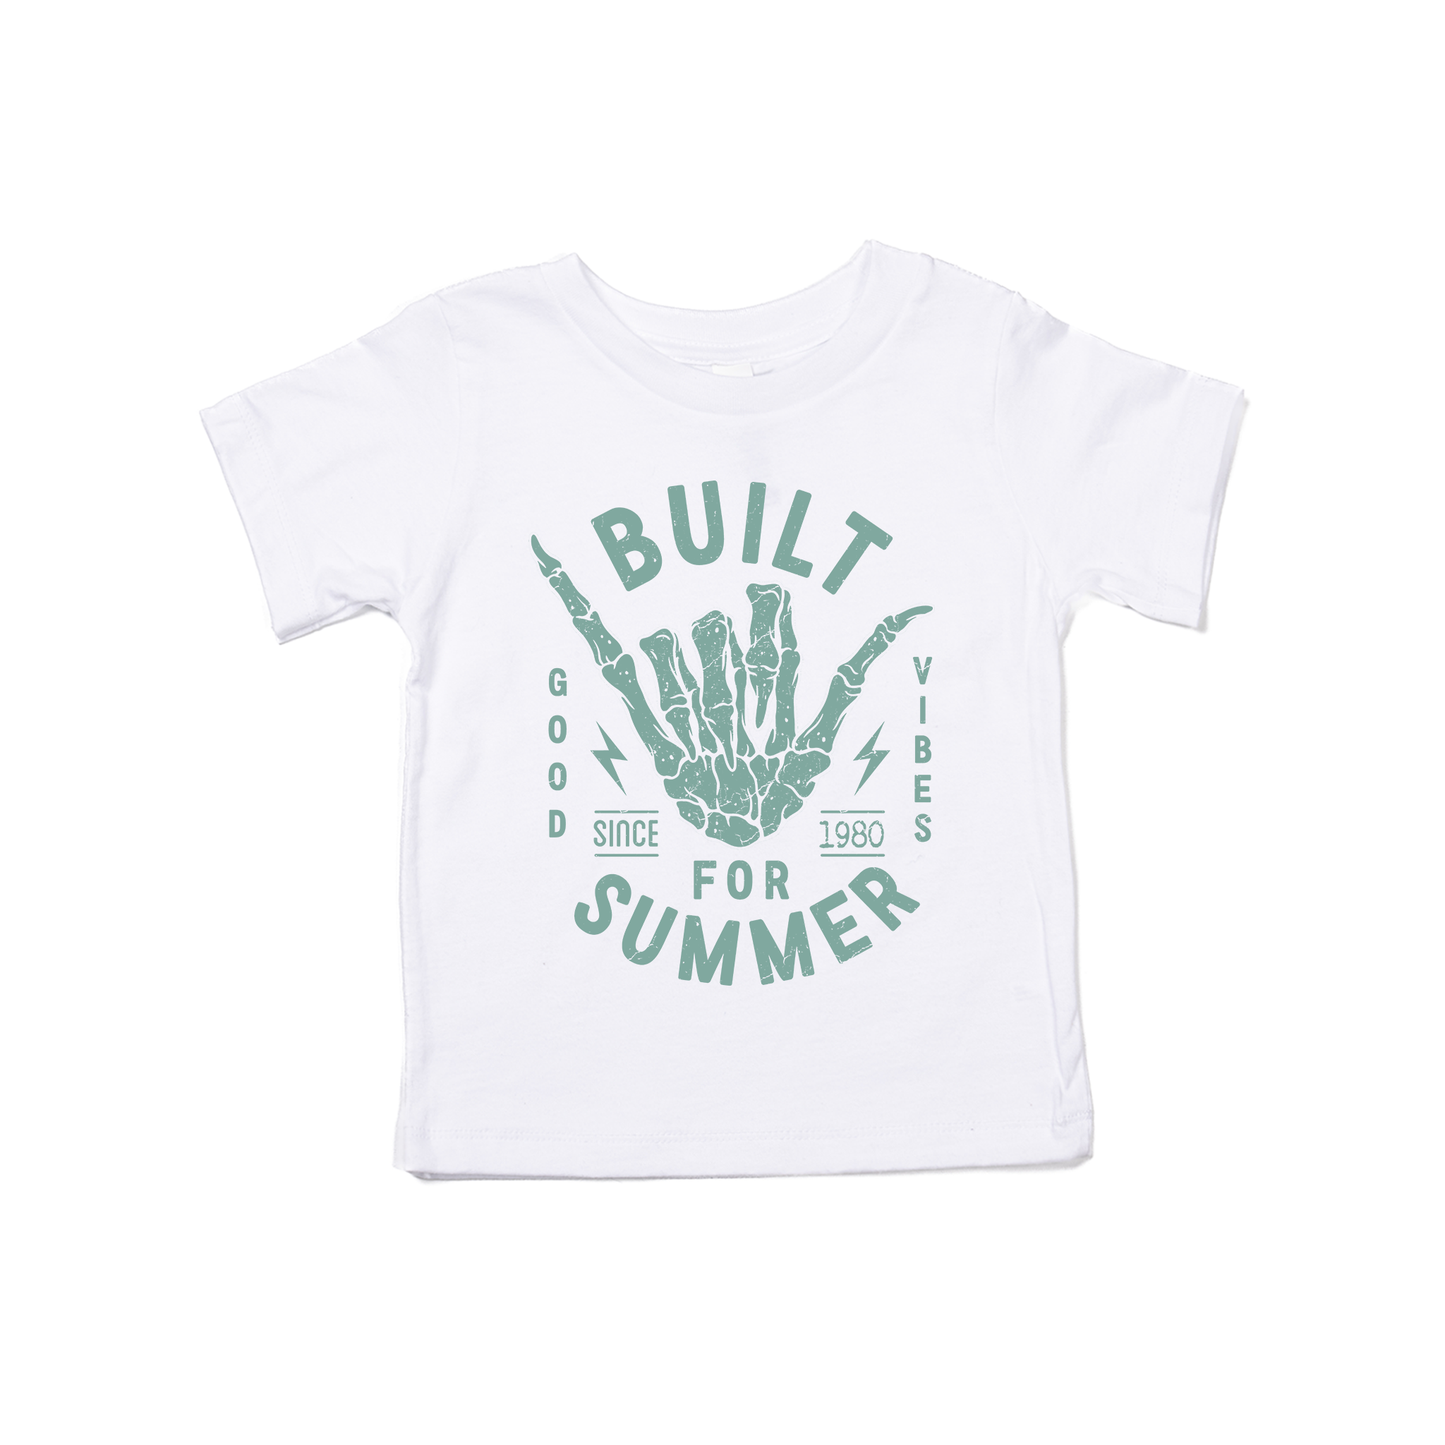 Built for Summer - Kids Tee (White)